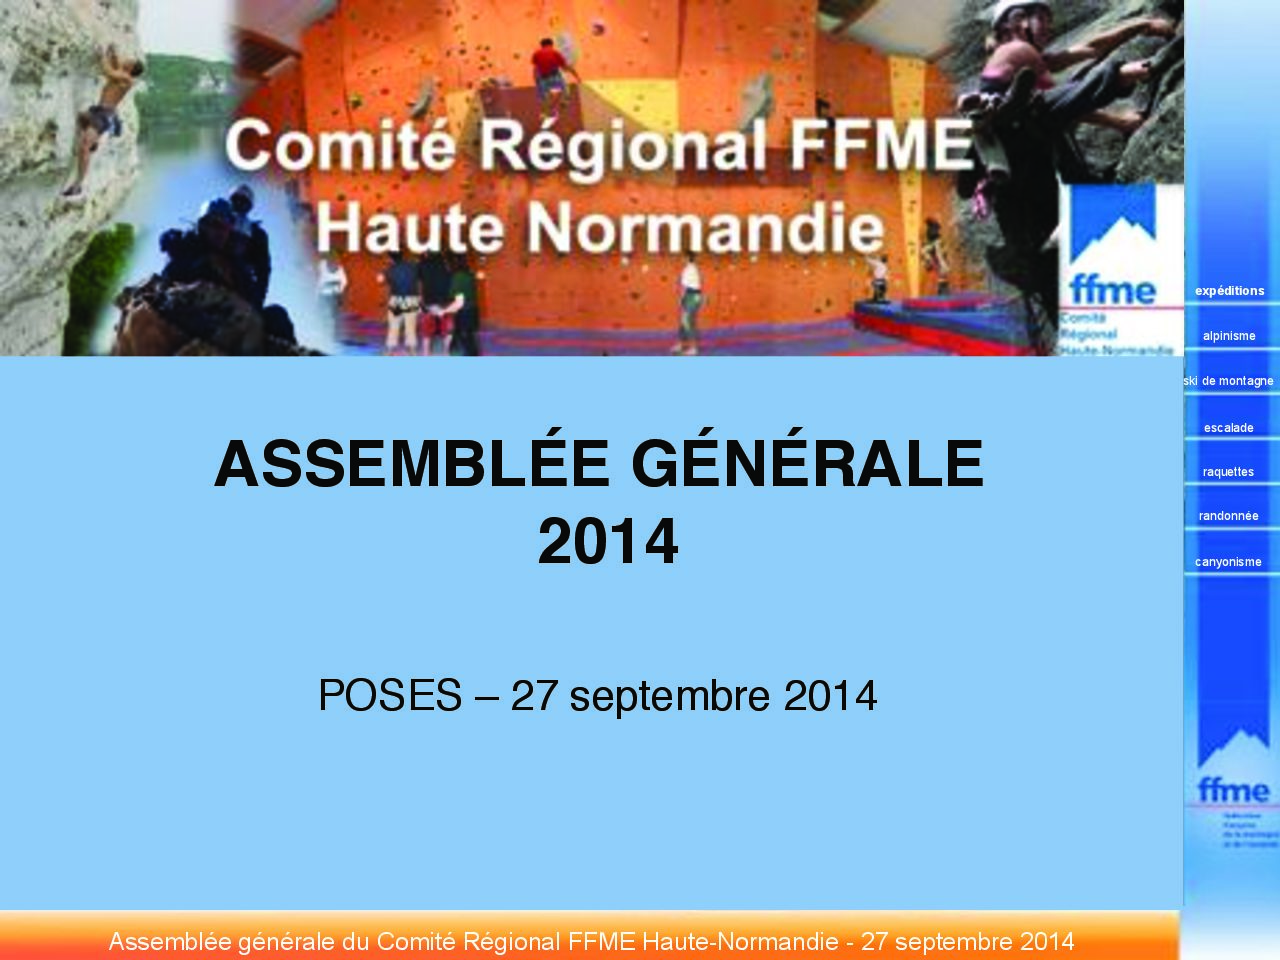 Ligue FFME Normandie